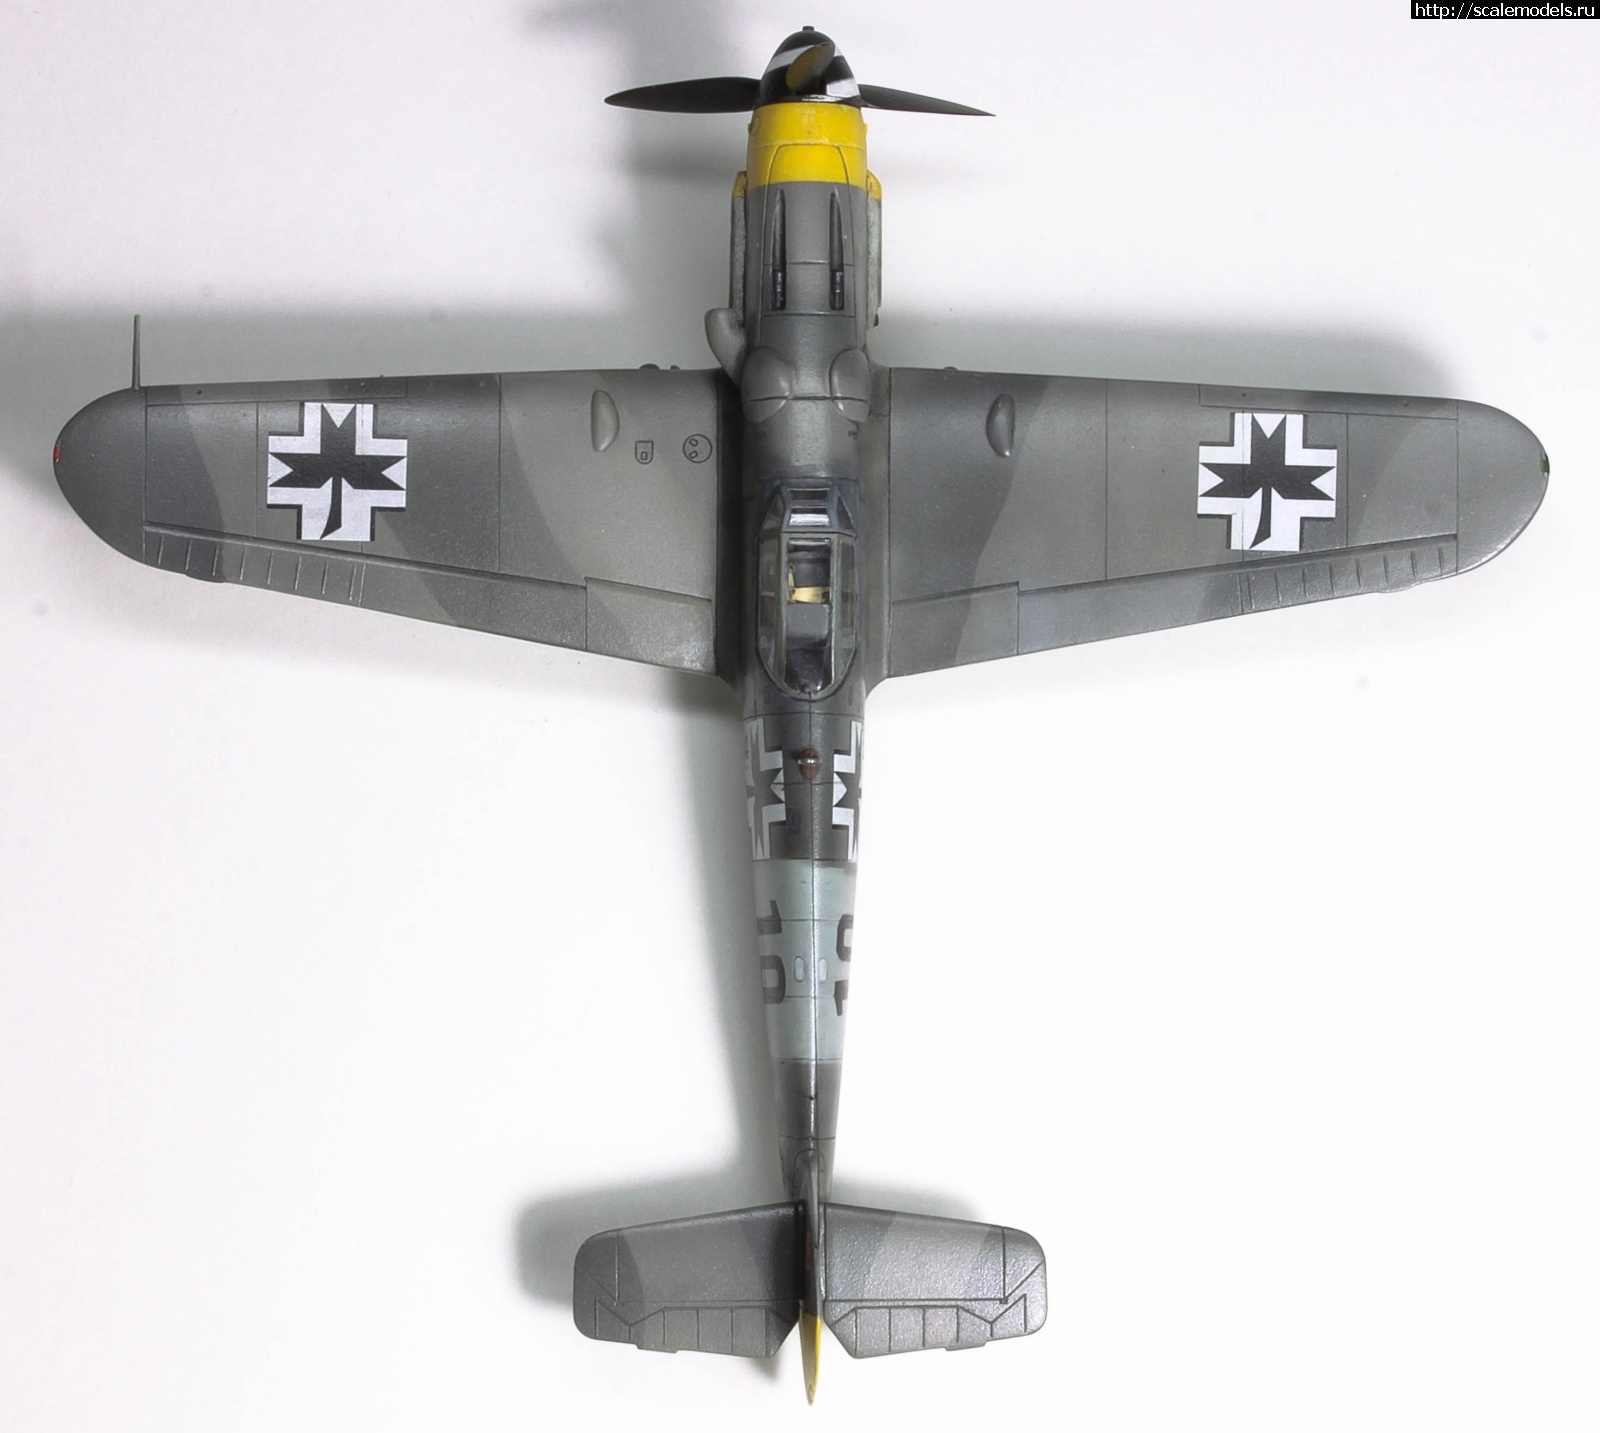 #1743915/ Messerschmitt Bf 109 G-14   1/72, Academy.   